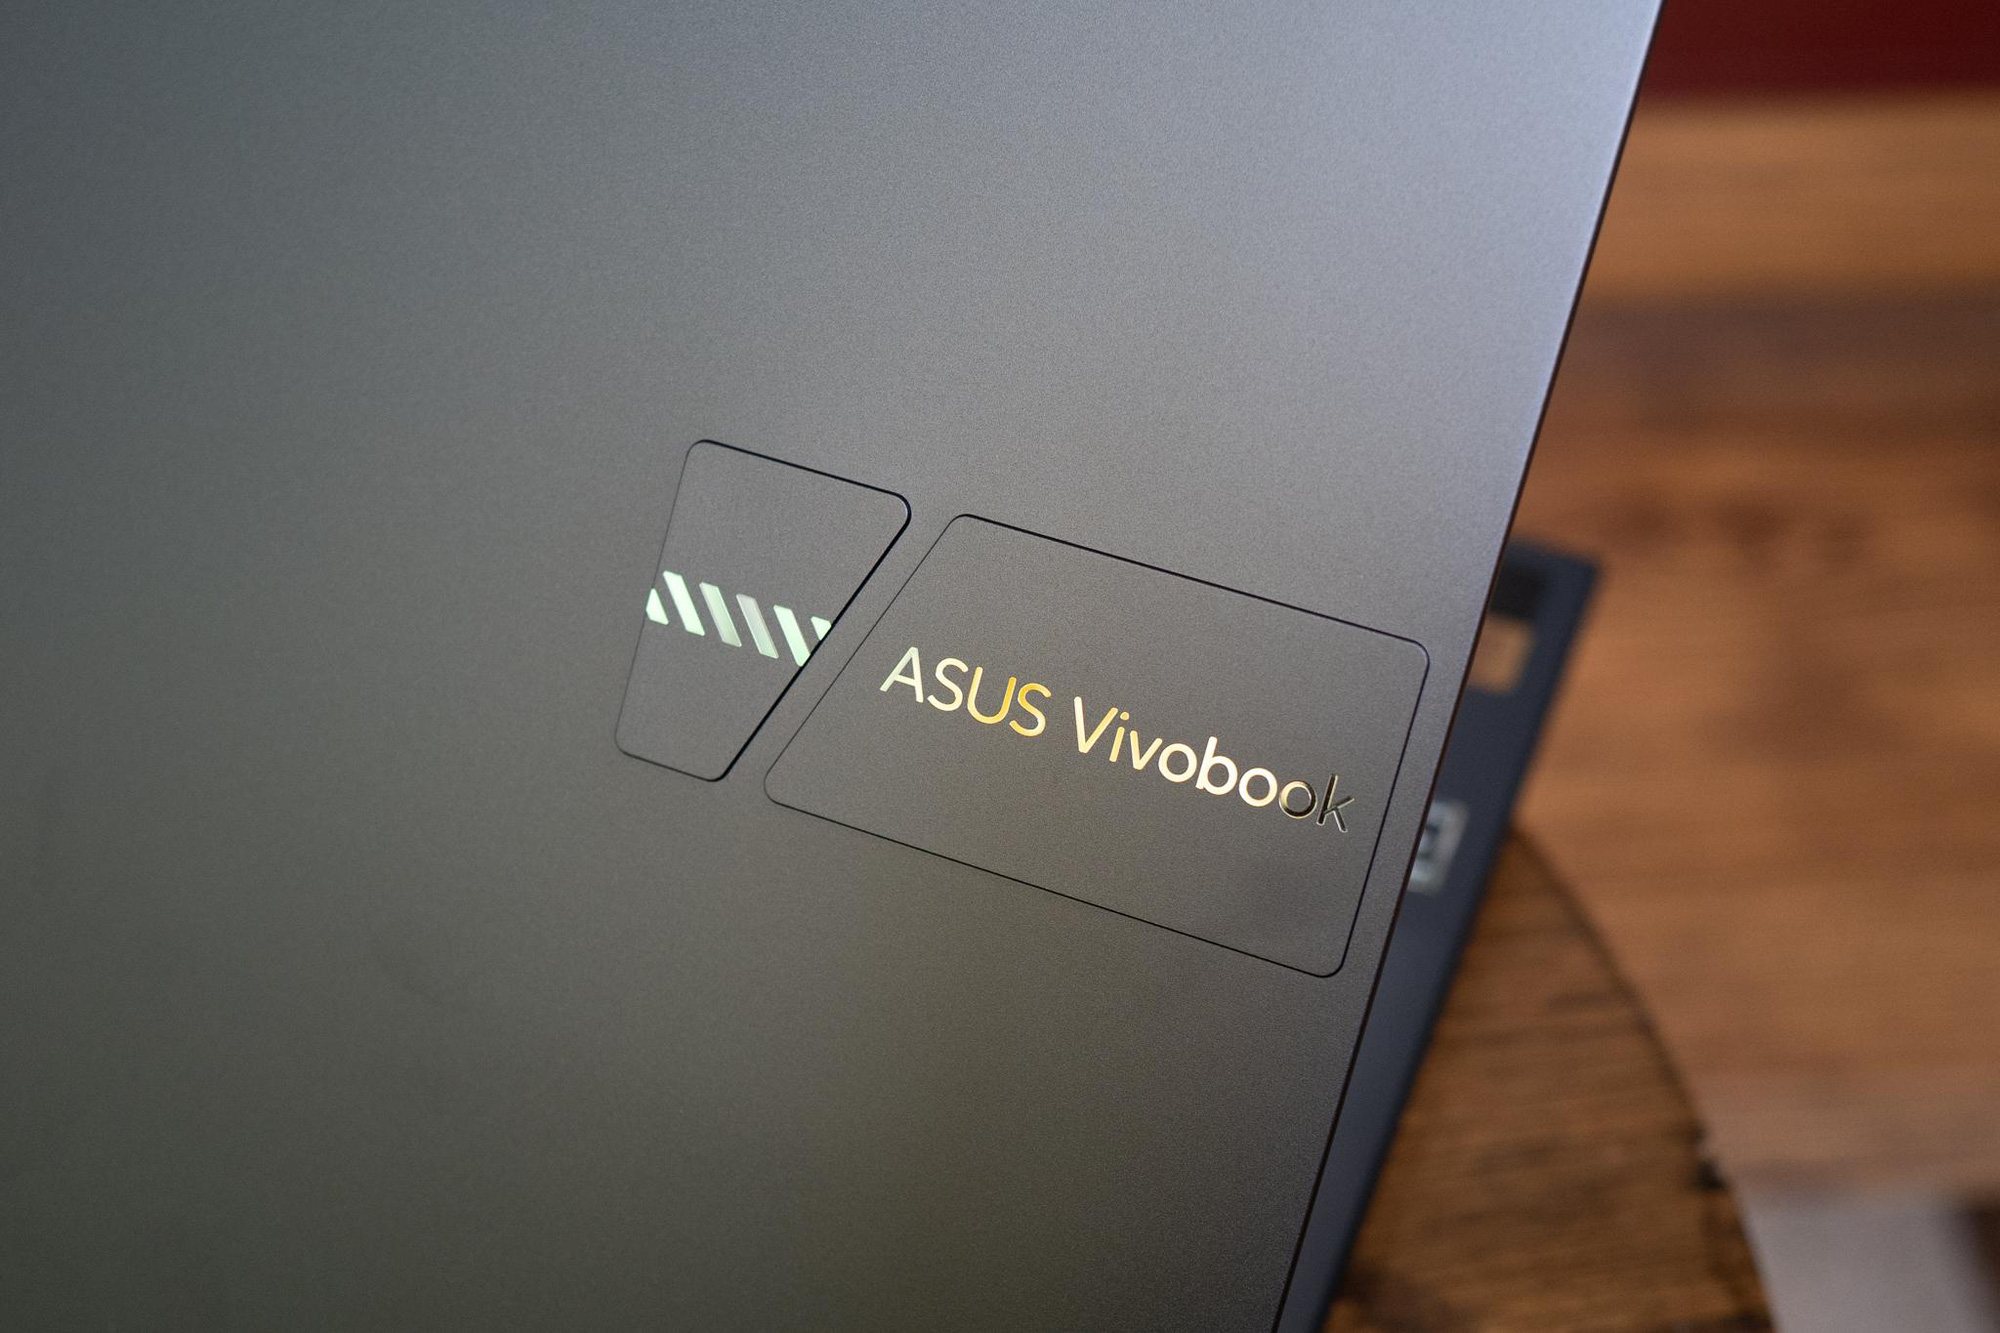 Đánh giá ASUS VivoBook 14 OLED: Sự kết hợp vẹn toàn giữa hiệu năng AMD 8 nhân và màn hình OLED chất lượng cao - Ảnh 2.